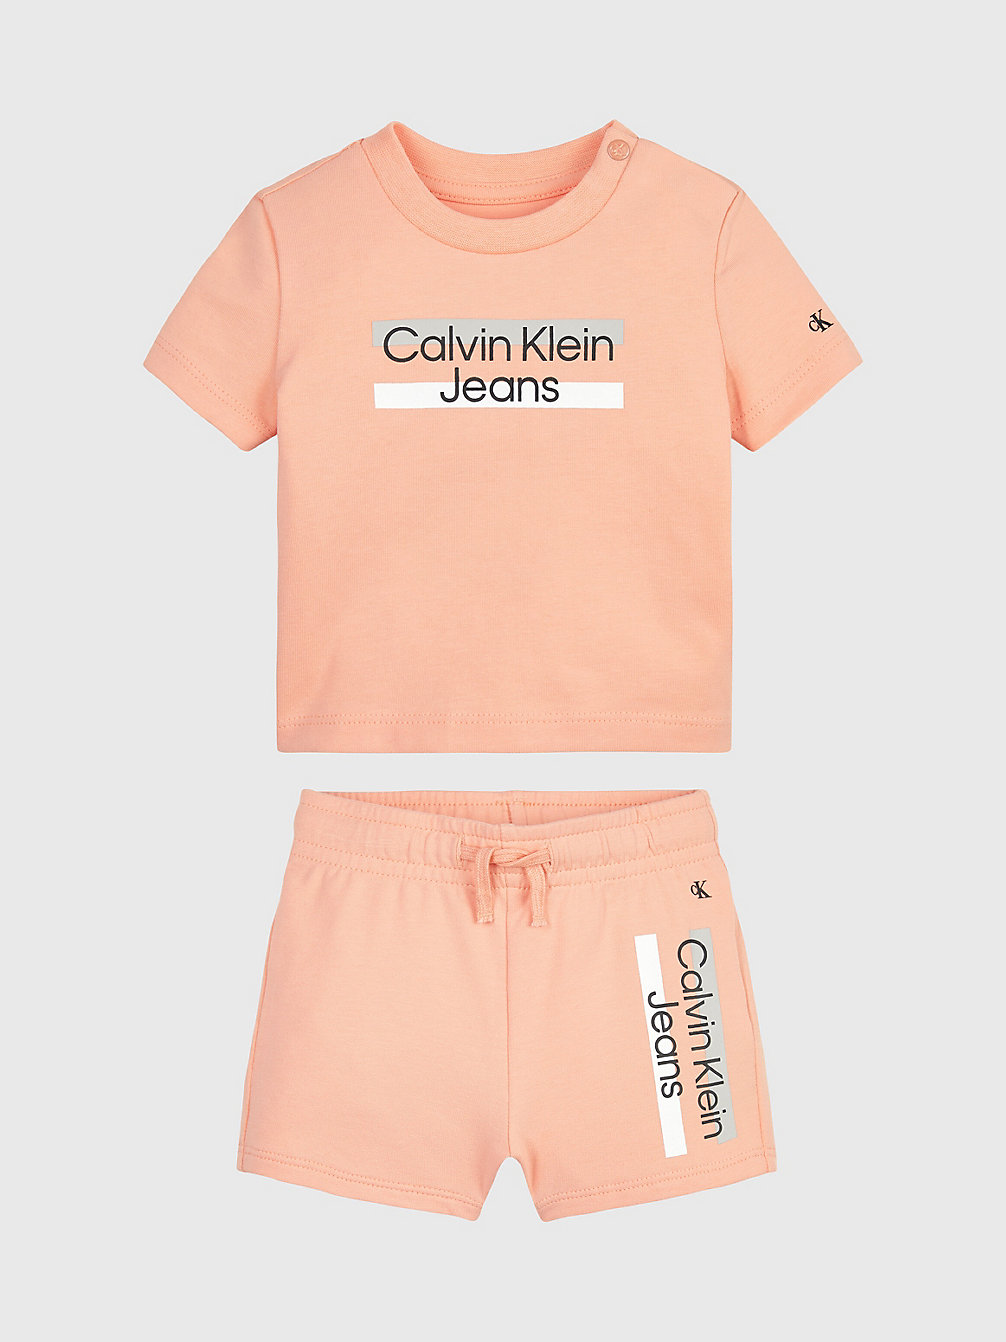 Ensemble T-Shirt Et Short Pour Nouveau-Né > FRESH CANTALOUPE > undefined newborn > Calvin Klein